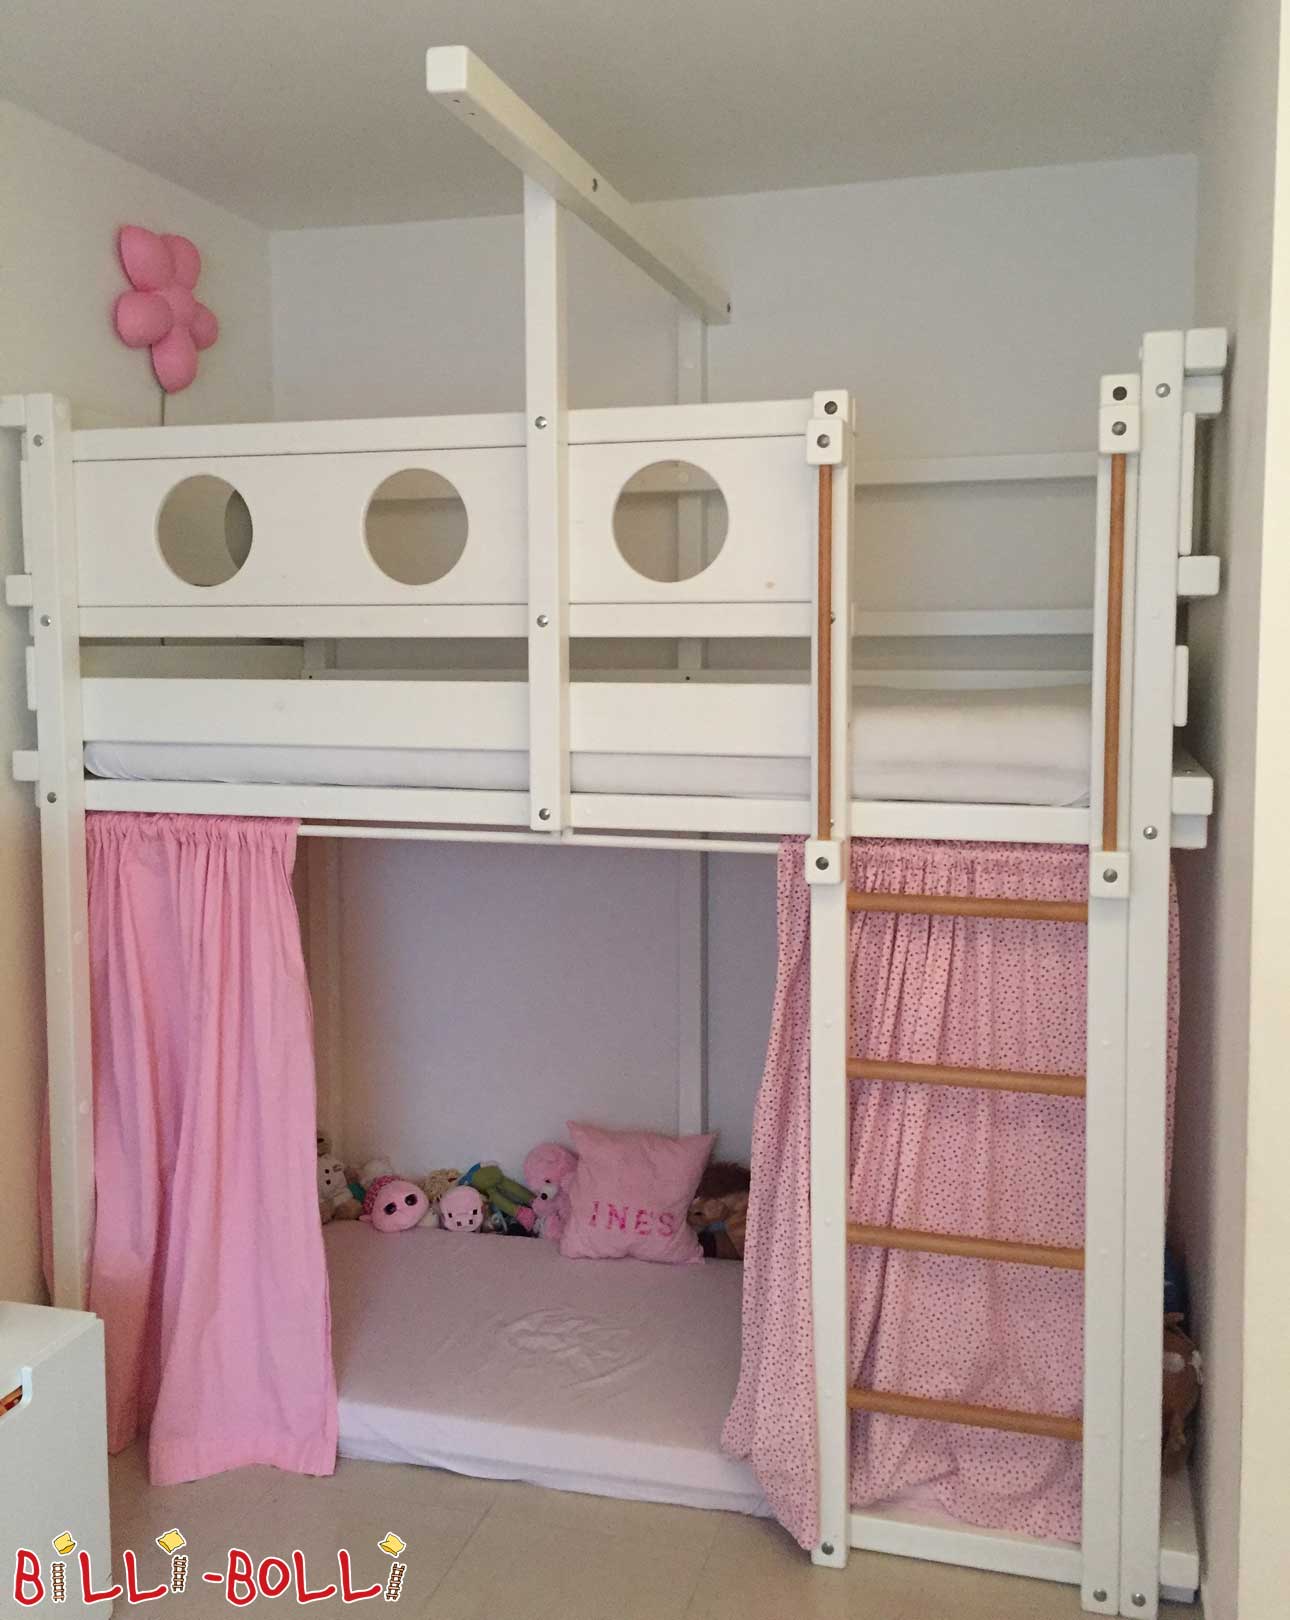 Palėpės lova, auganti su vaiku - baltos spalvos svajonė (Kategorija: Naudojama palėpės lova)